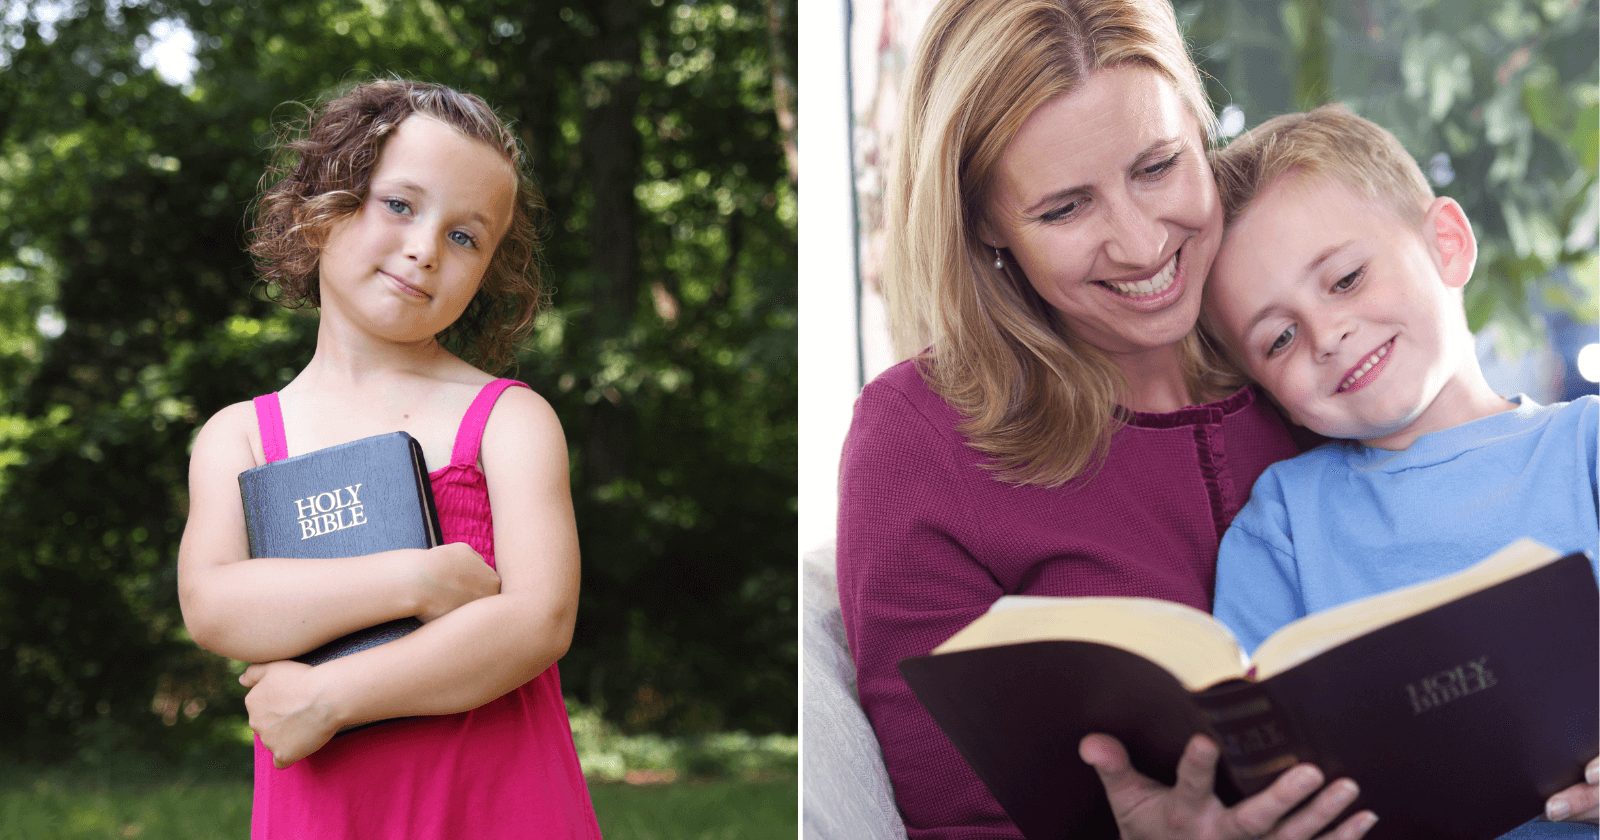 DIA DAS CRIANÇAS: 31 versículos sobre crianças que mostram muito amor pelos pequeninos